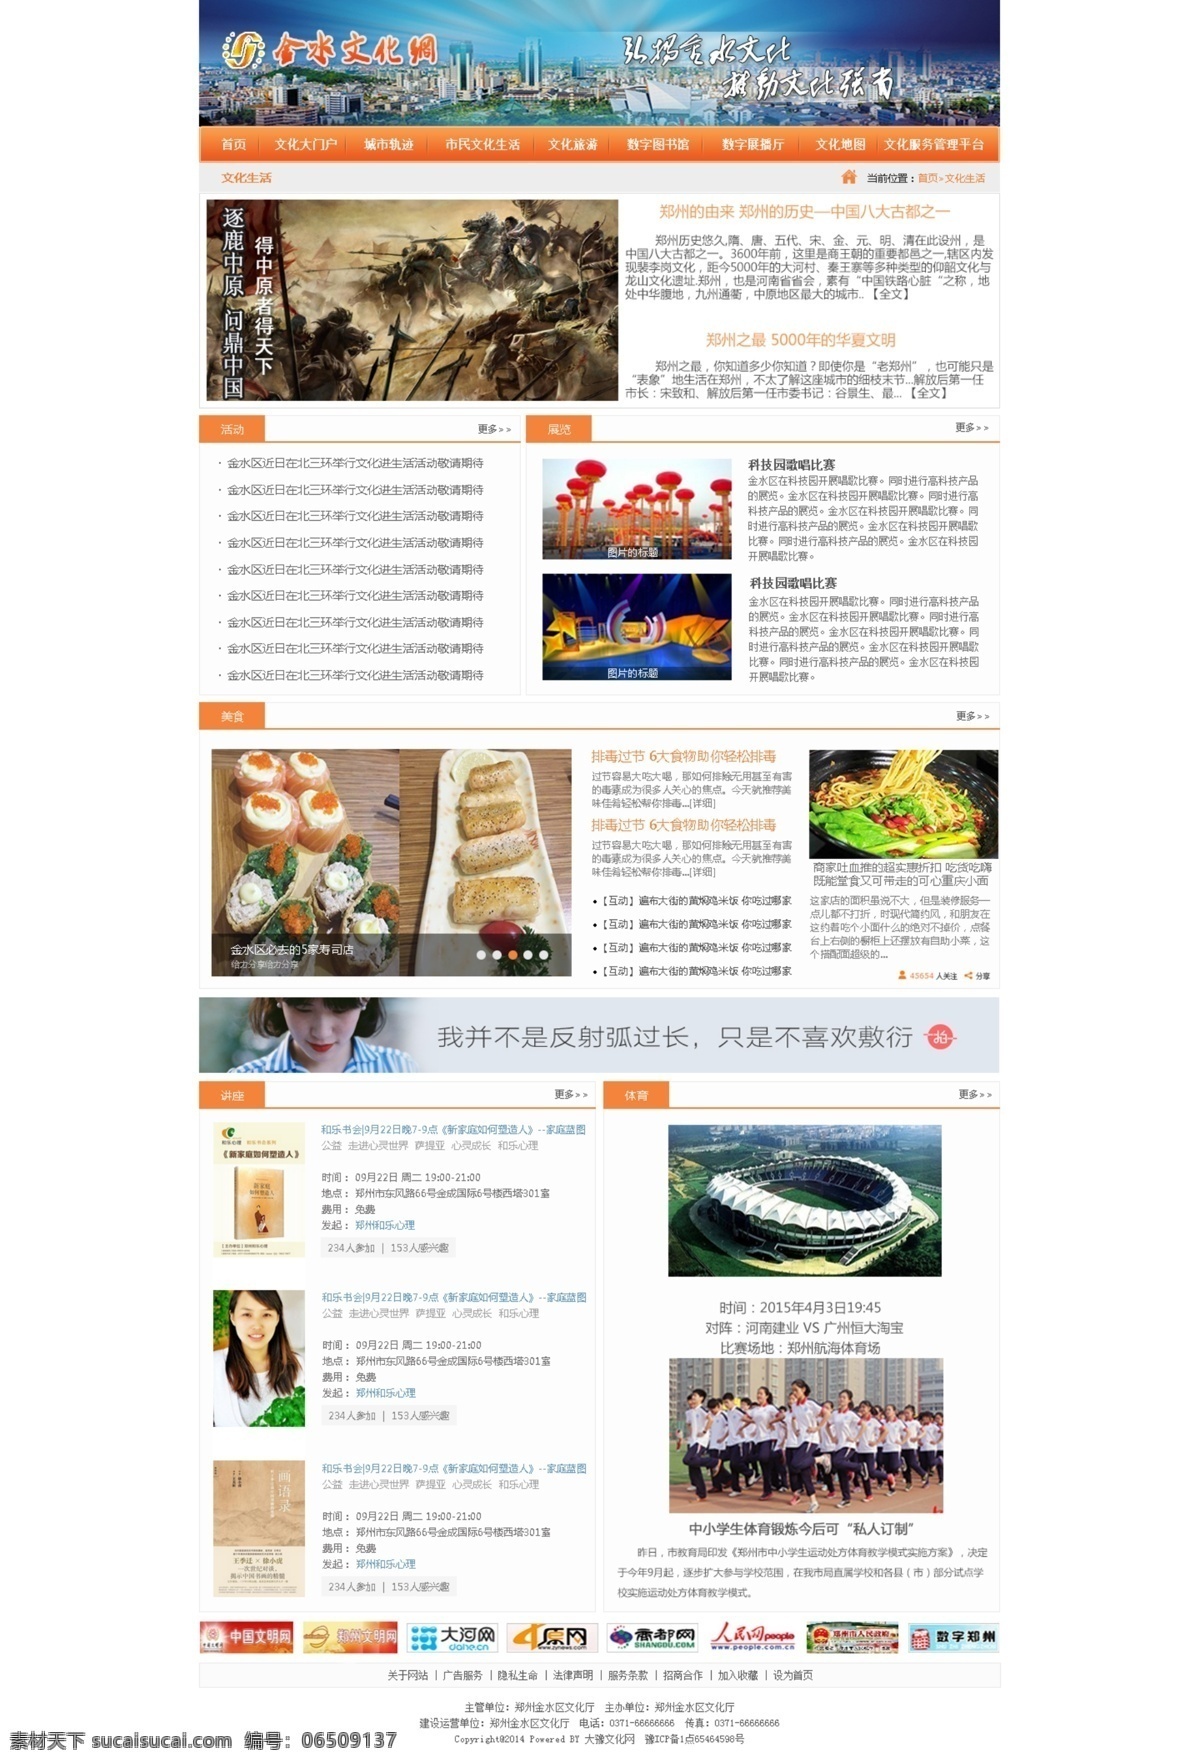 金水 文化 生活网 生活文化网站 门户网站 psd格式 高清预览 金水区 橙色 网页设计 二级页设计 白色